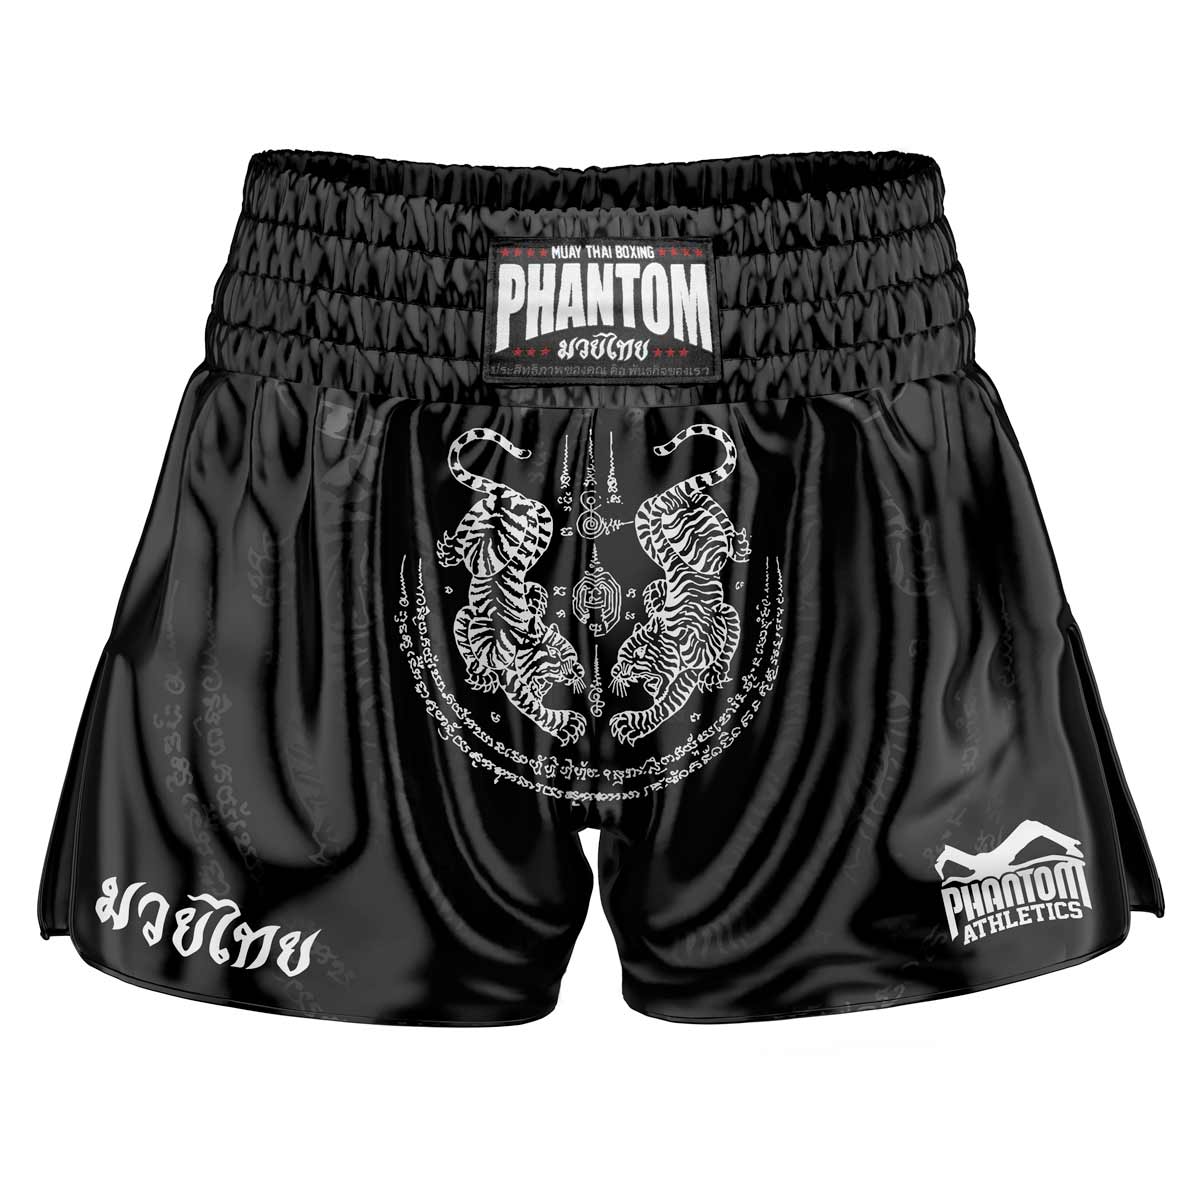 Le short Phantom Muay Thai SAK YANT en noir. Le tissu satiné de la vieille école avec un motif de tigre traditionnel vous donne une sensation originale de Thaïlande. Dans la qualité habituelle Phantom Athletics . Idéal pour vos entraînements et compétitions de boxe thaïlandaise.